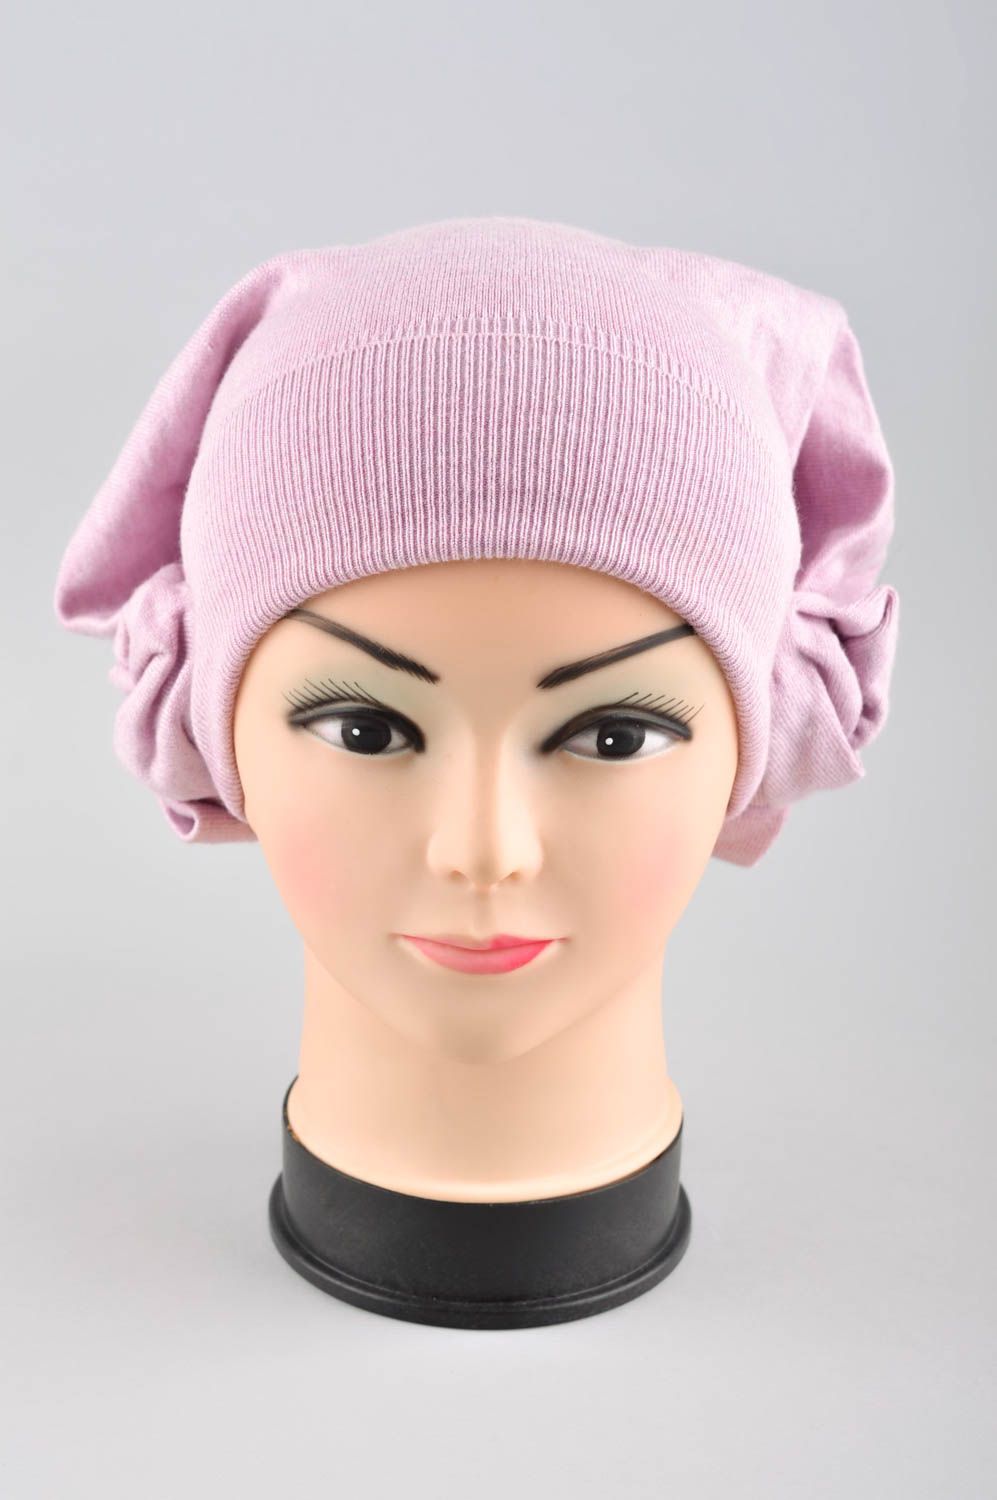 Зимняя женская шапка ручной работы зимняя шапка розовая головной убор красивый фото 1